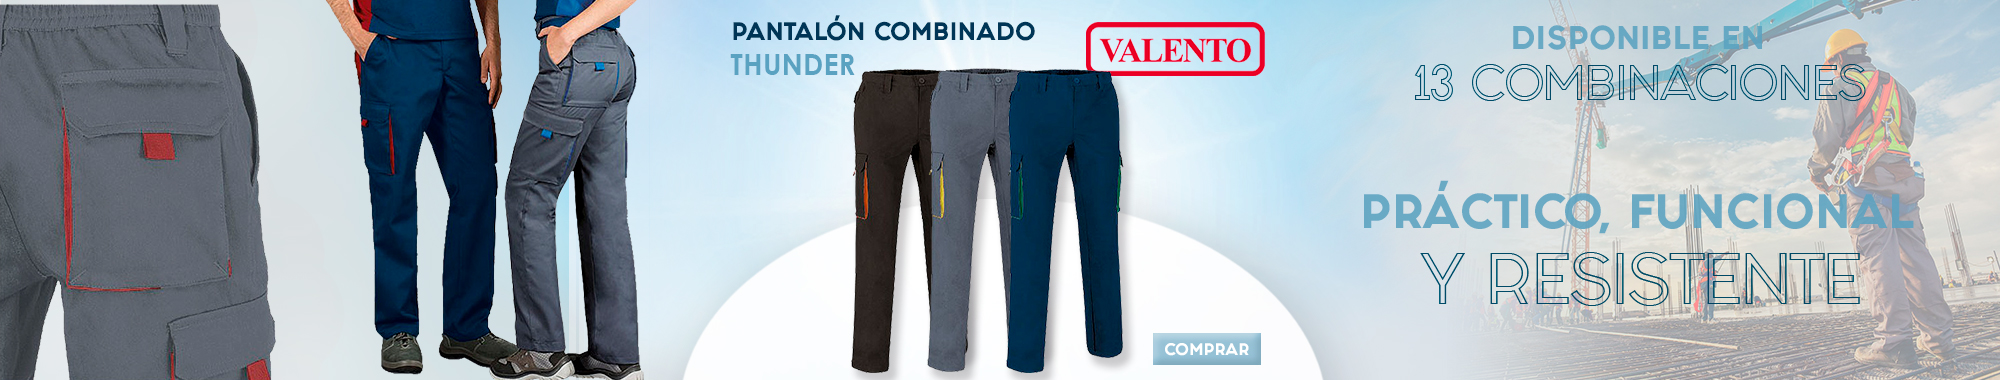 Pantalón combinado VALENTO THUNDER